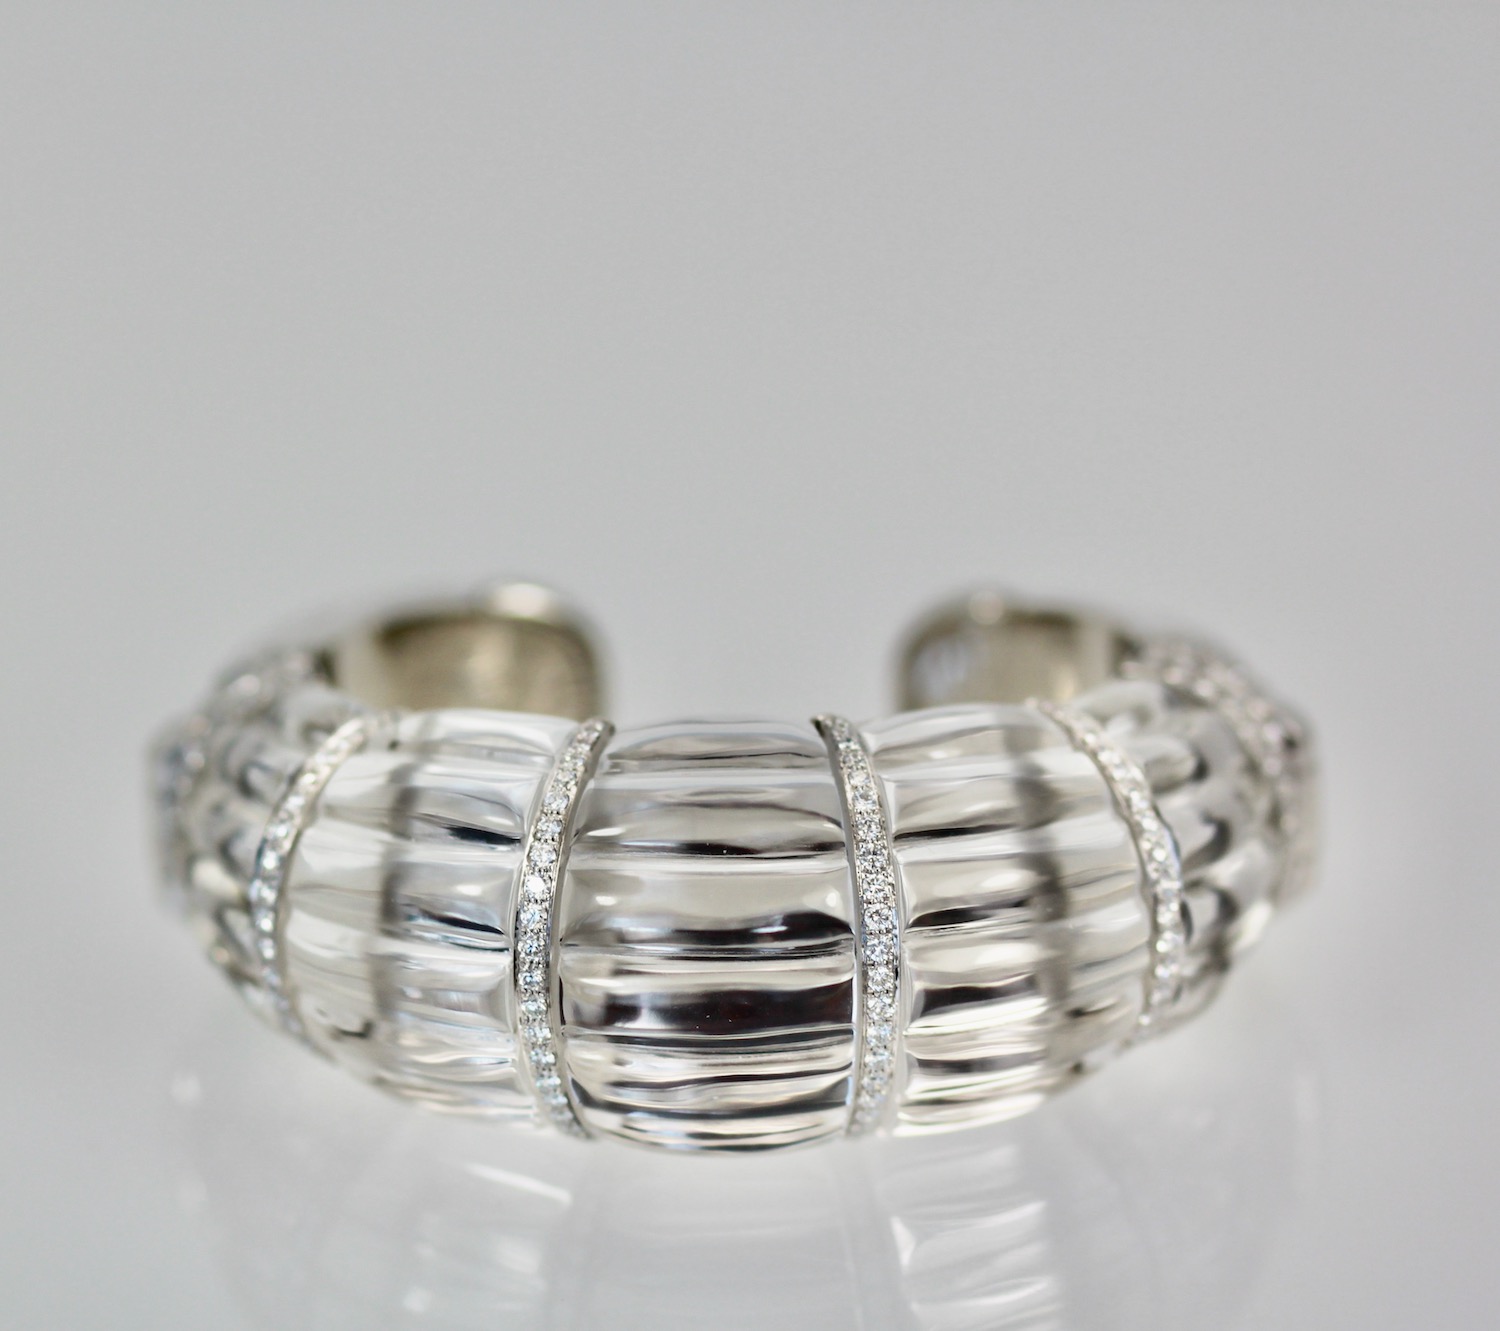 David Webb Rock Crystal Bracelet with Diamonds – close up